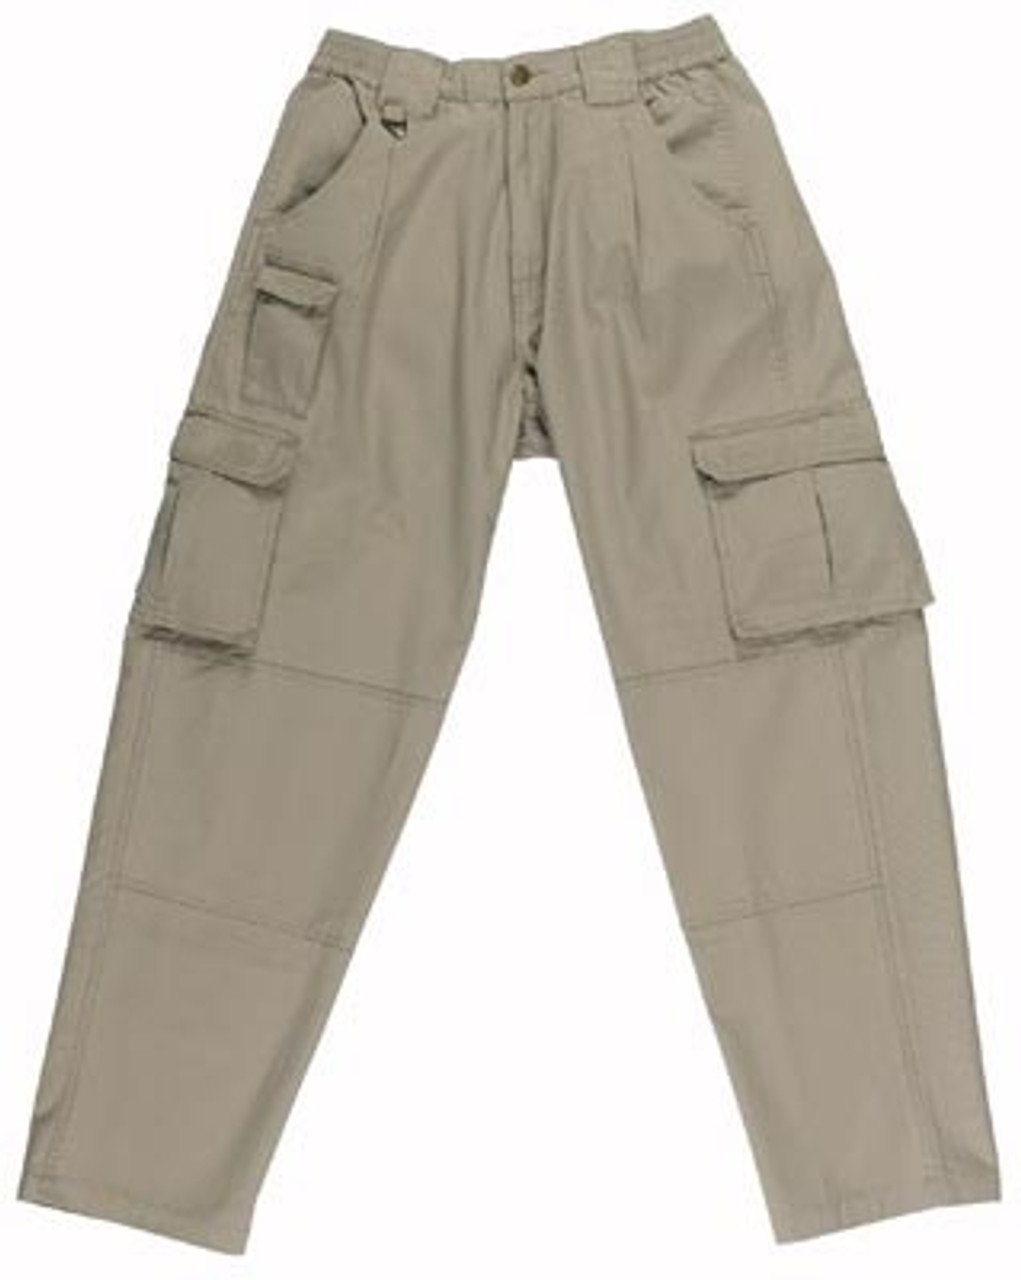 Khaki Tactical Uniform Pant - Doughboys Surplus